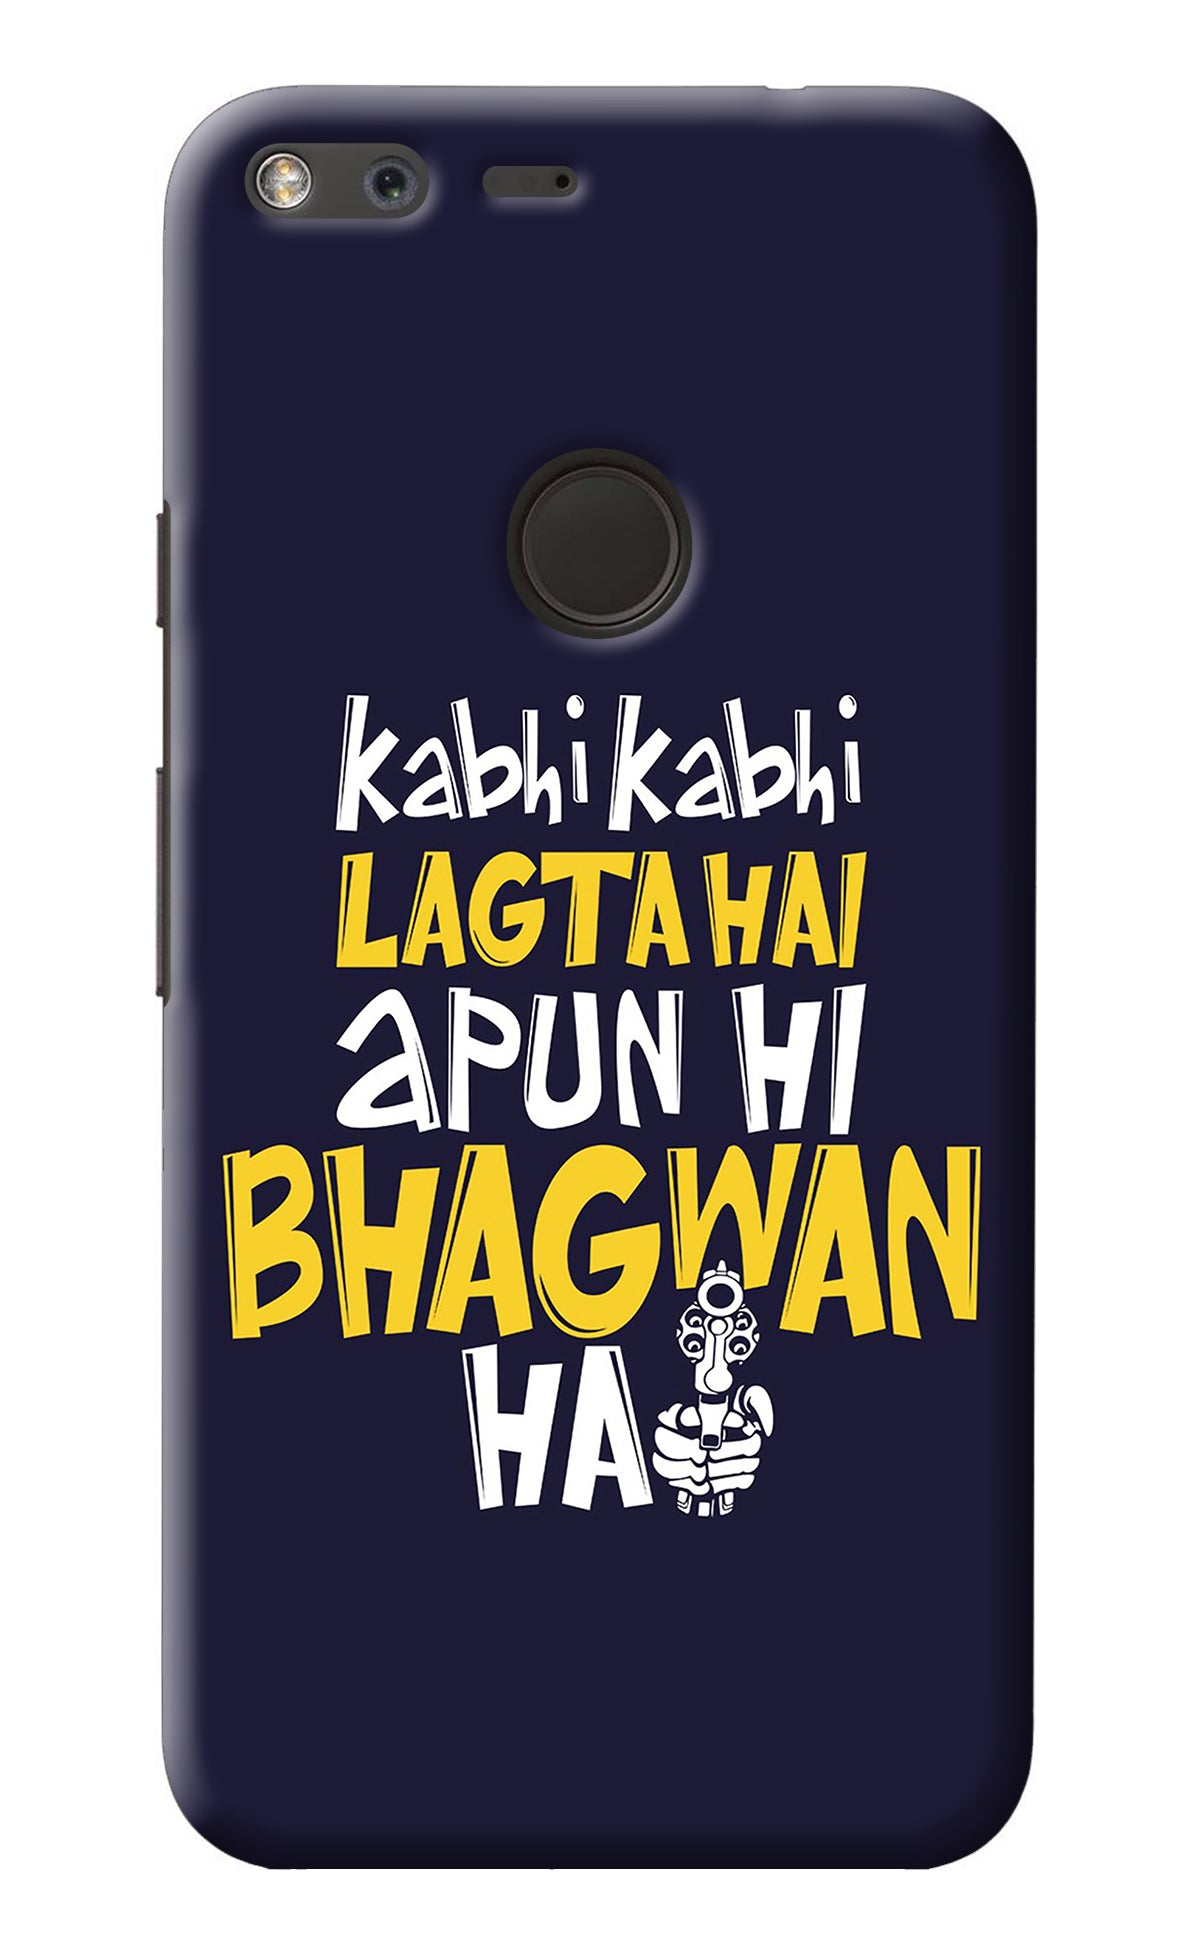 Kabhi Kabhi Lagta Hai Apun Hi Bhagwan Hai Google Pixel XL Back Cover